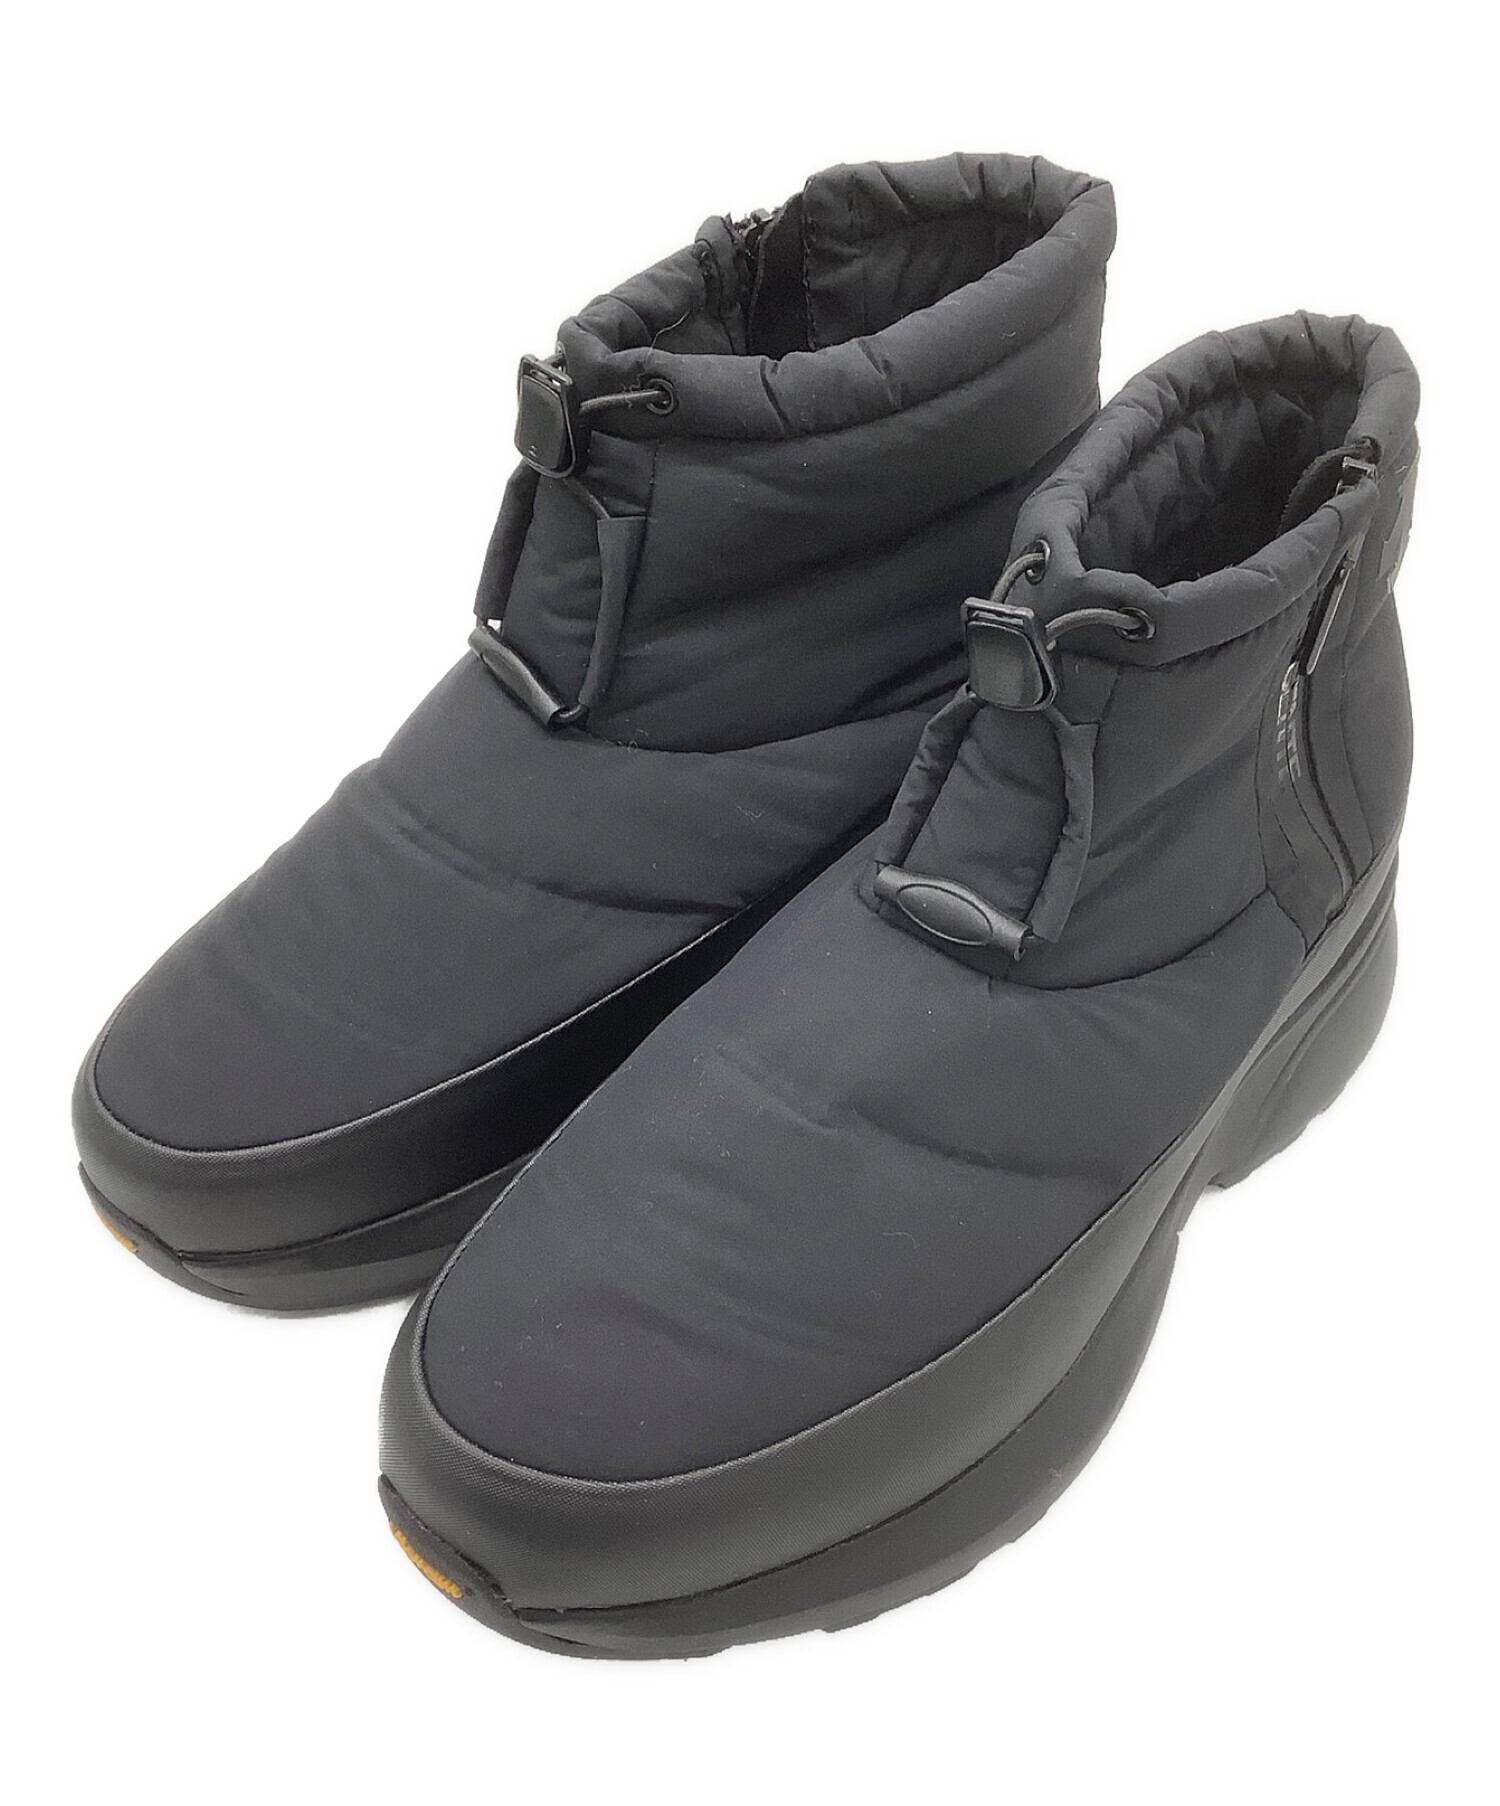 販売認定店 【新品】 DESCENTE ACTIVE WINTER BOOTS 28cm 黒 - 靴